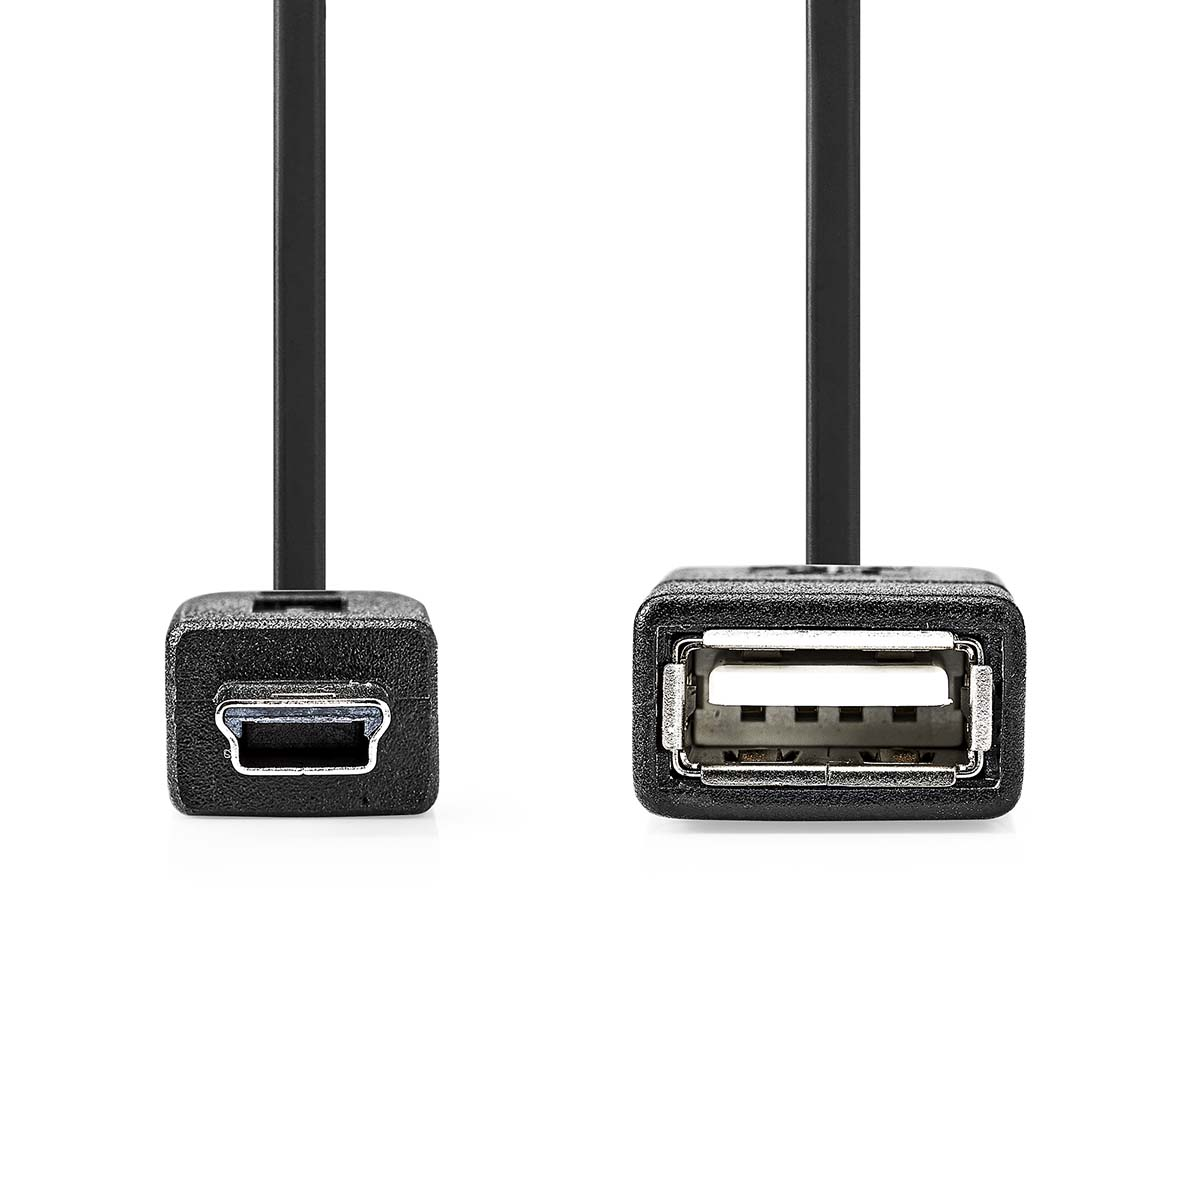 Micro-B CCGP60315BK02 Adapter USB NEDIS